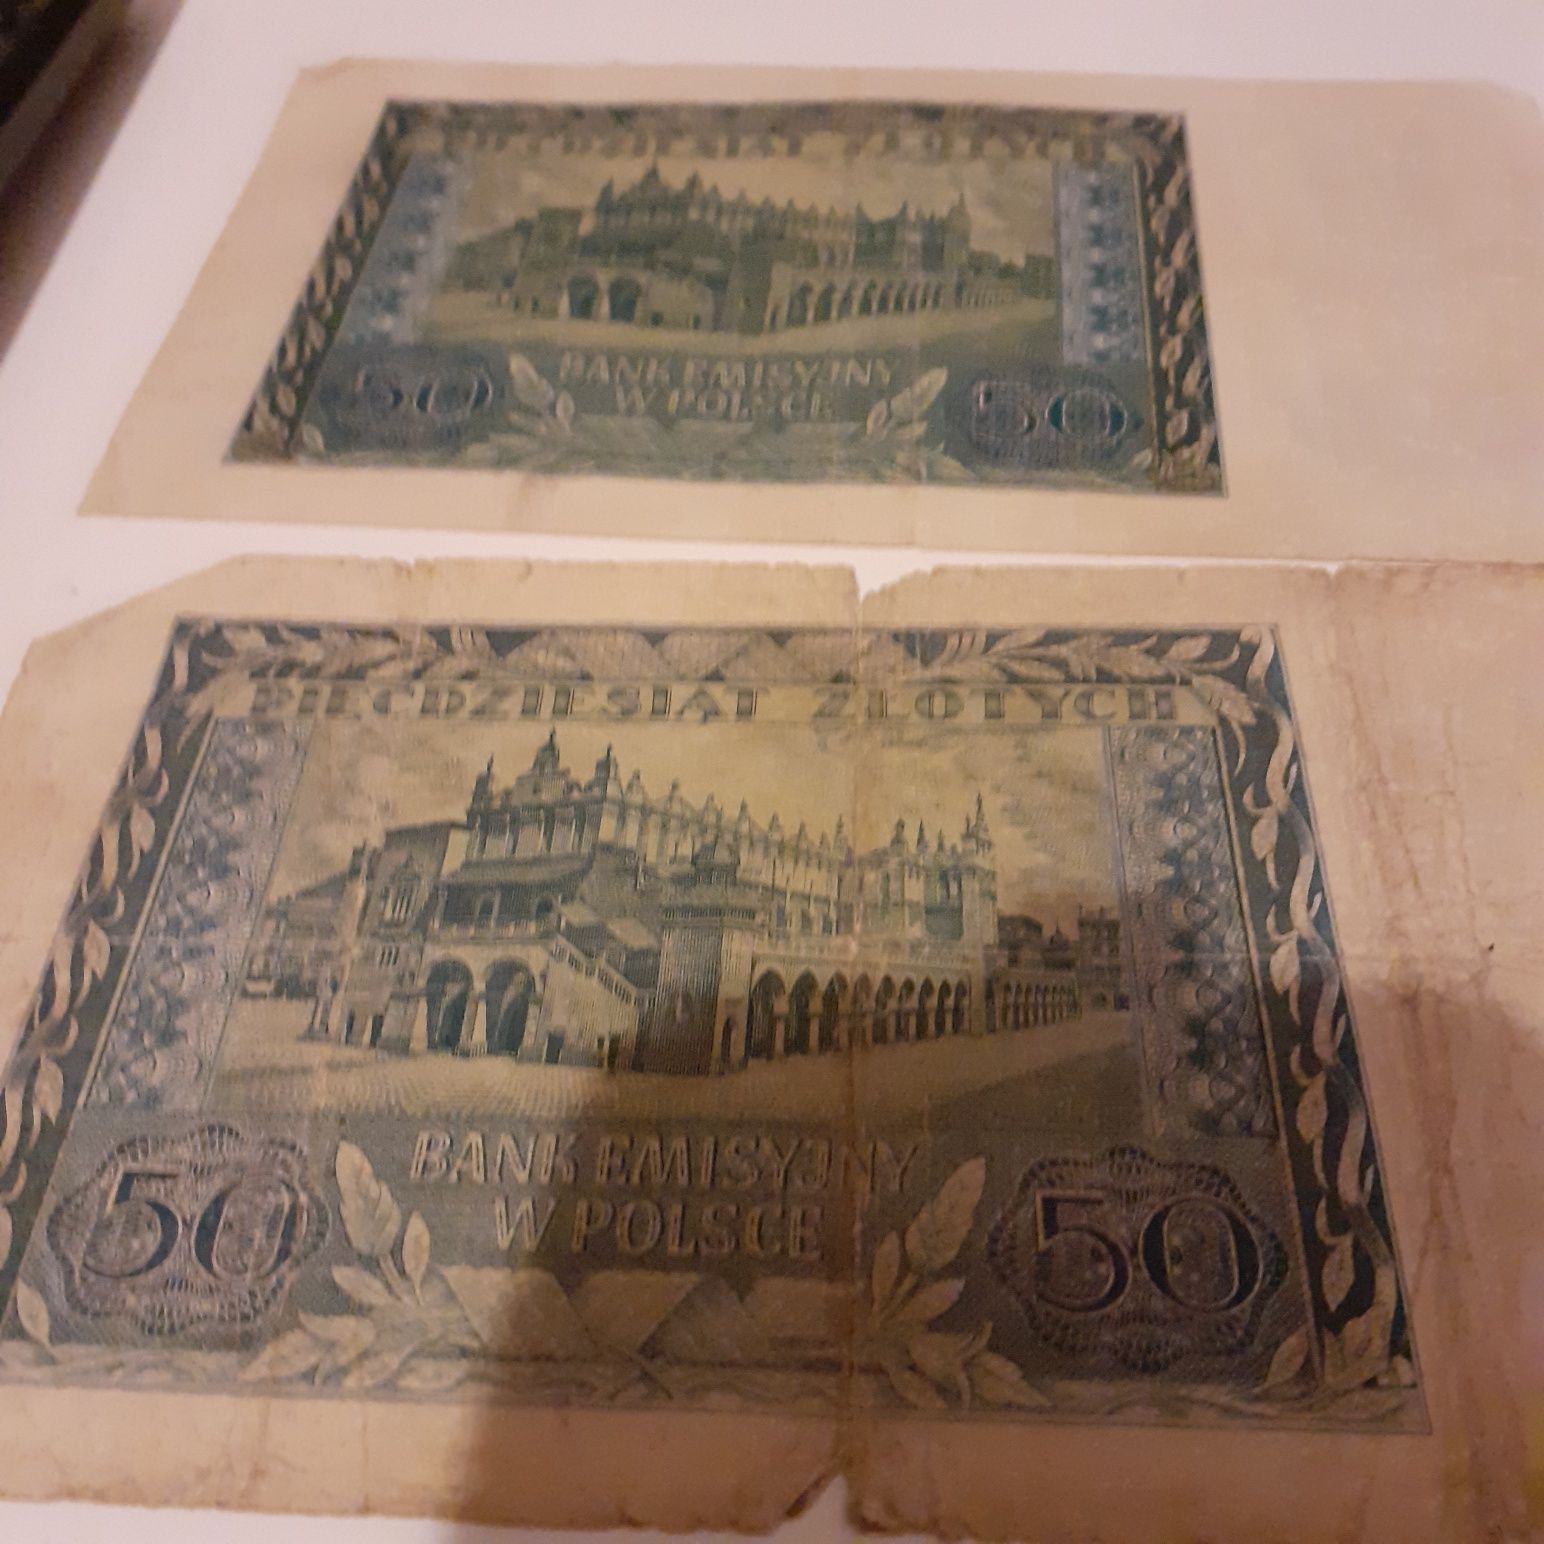 Sprzedam    banknot   z roku 1940  .  5szt  cena   za   całość250zł